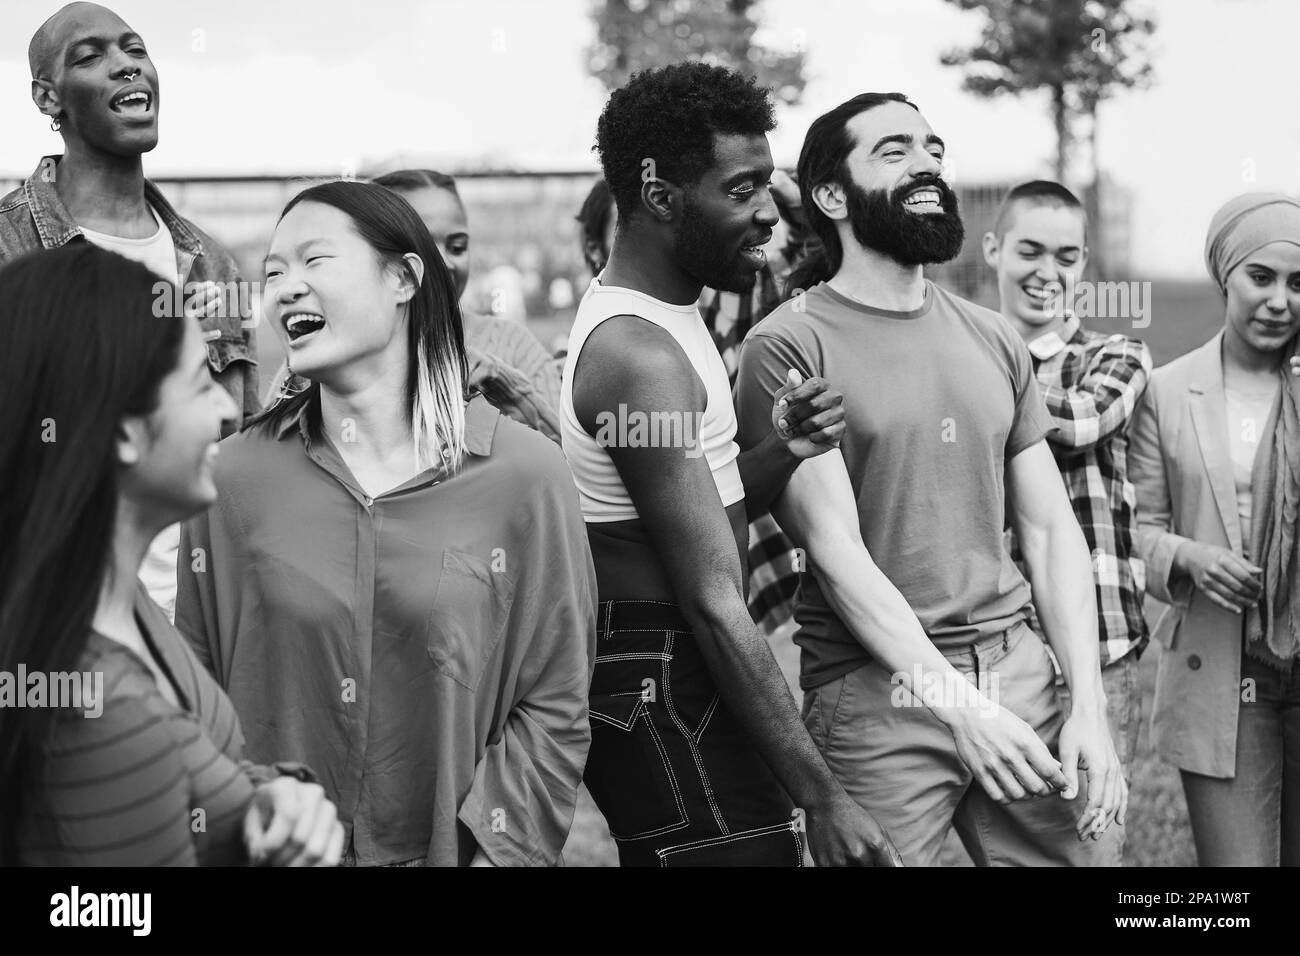 Junge, vielfältige Menschen, die gemeinsam im Freien tanzen - Schwerpunkt auf afrikanischem Schwulengesicht - Schwarz-Weiß-Bearbeitung Stockfoto